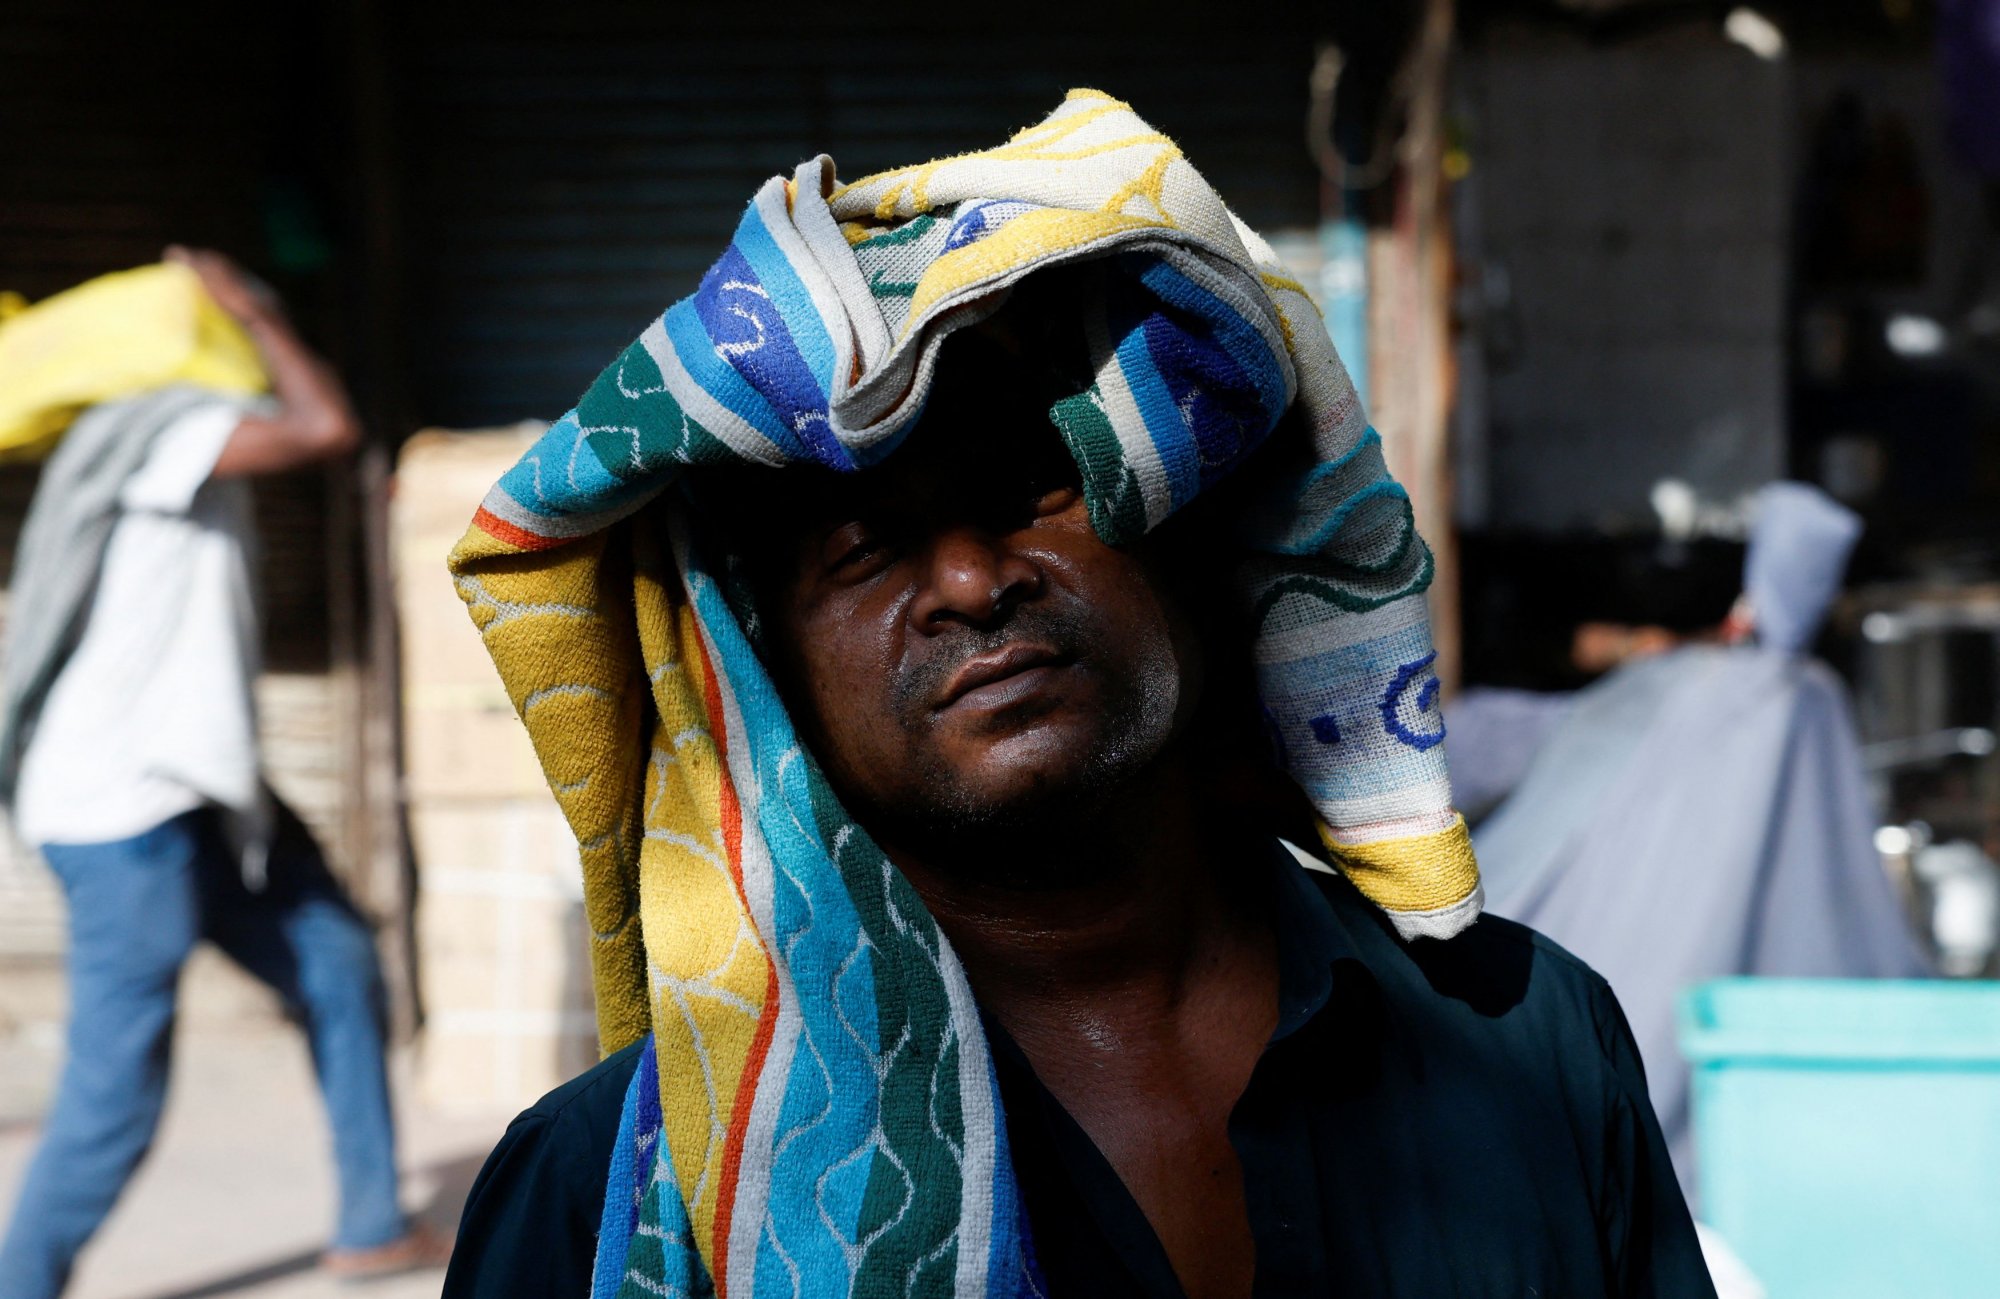 Ρεκόρ θερμοκρασίας στο Νέο Δελχί – Ενας νεκρός λόγω καύσωνα